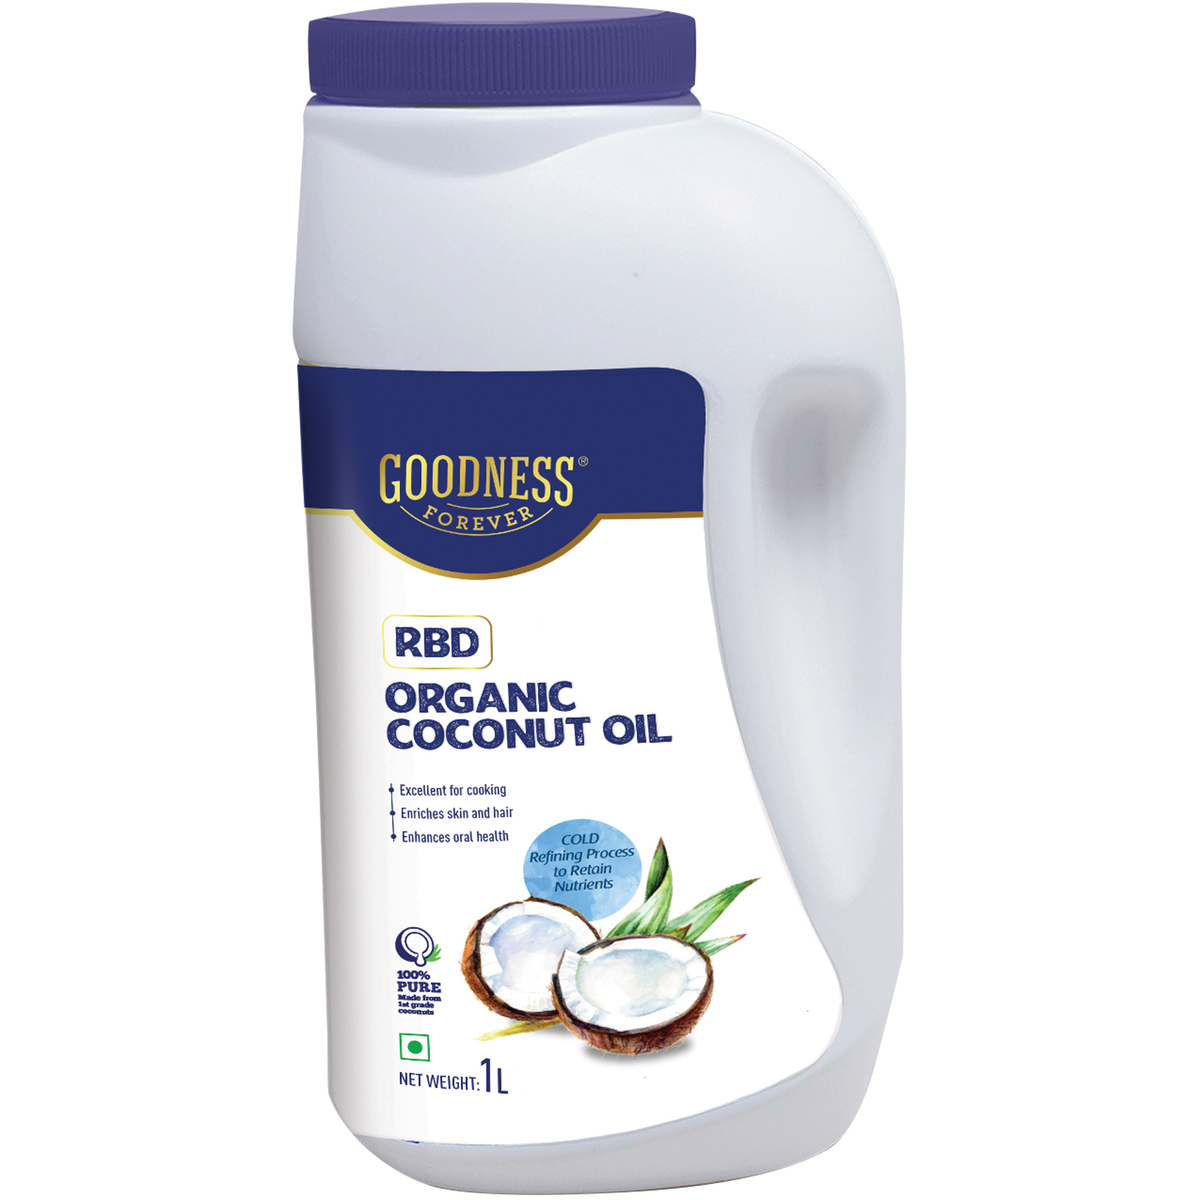 Goodness Forever RBD Organic Coconut Oil 1 Litre